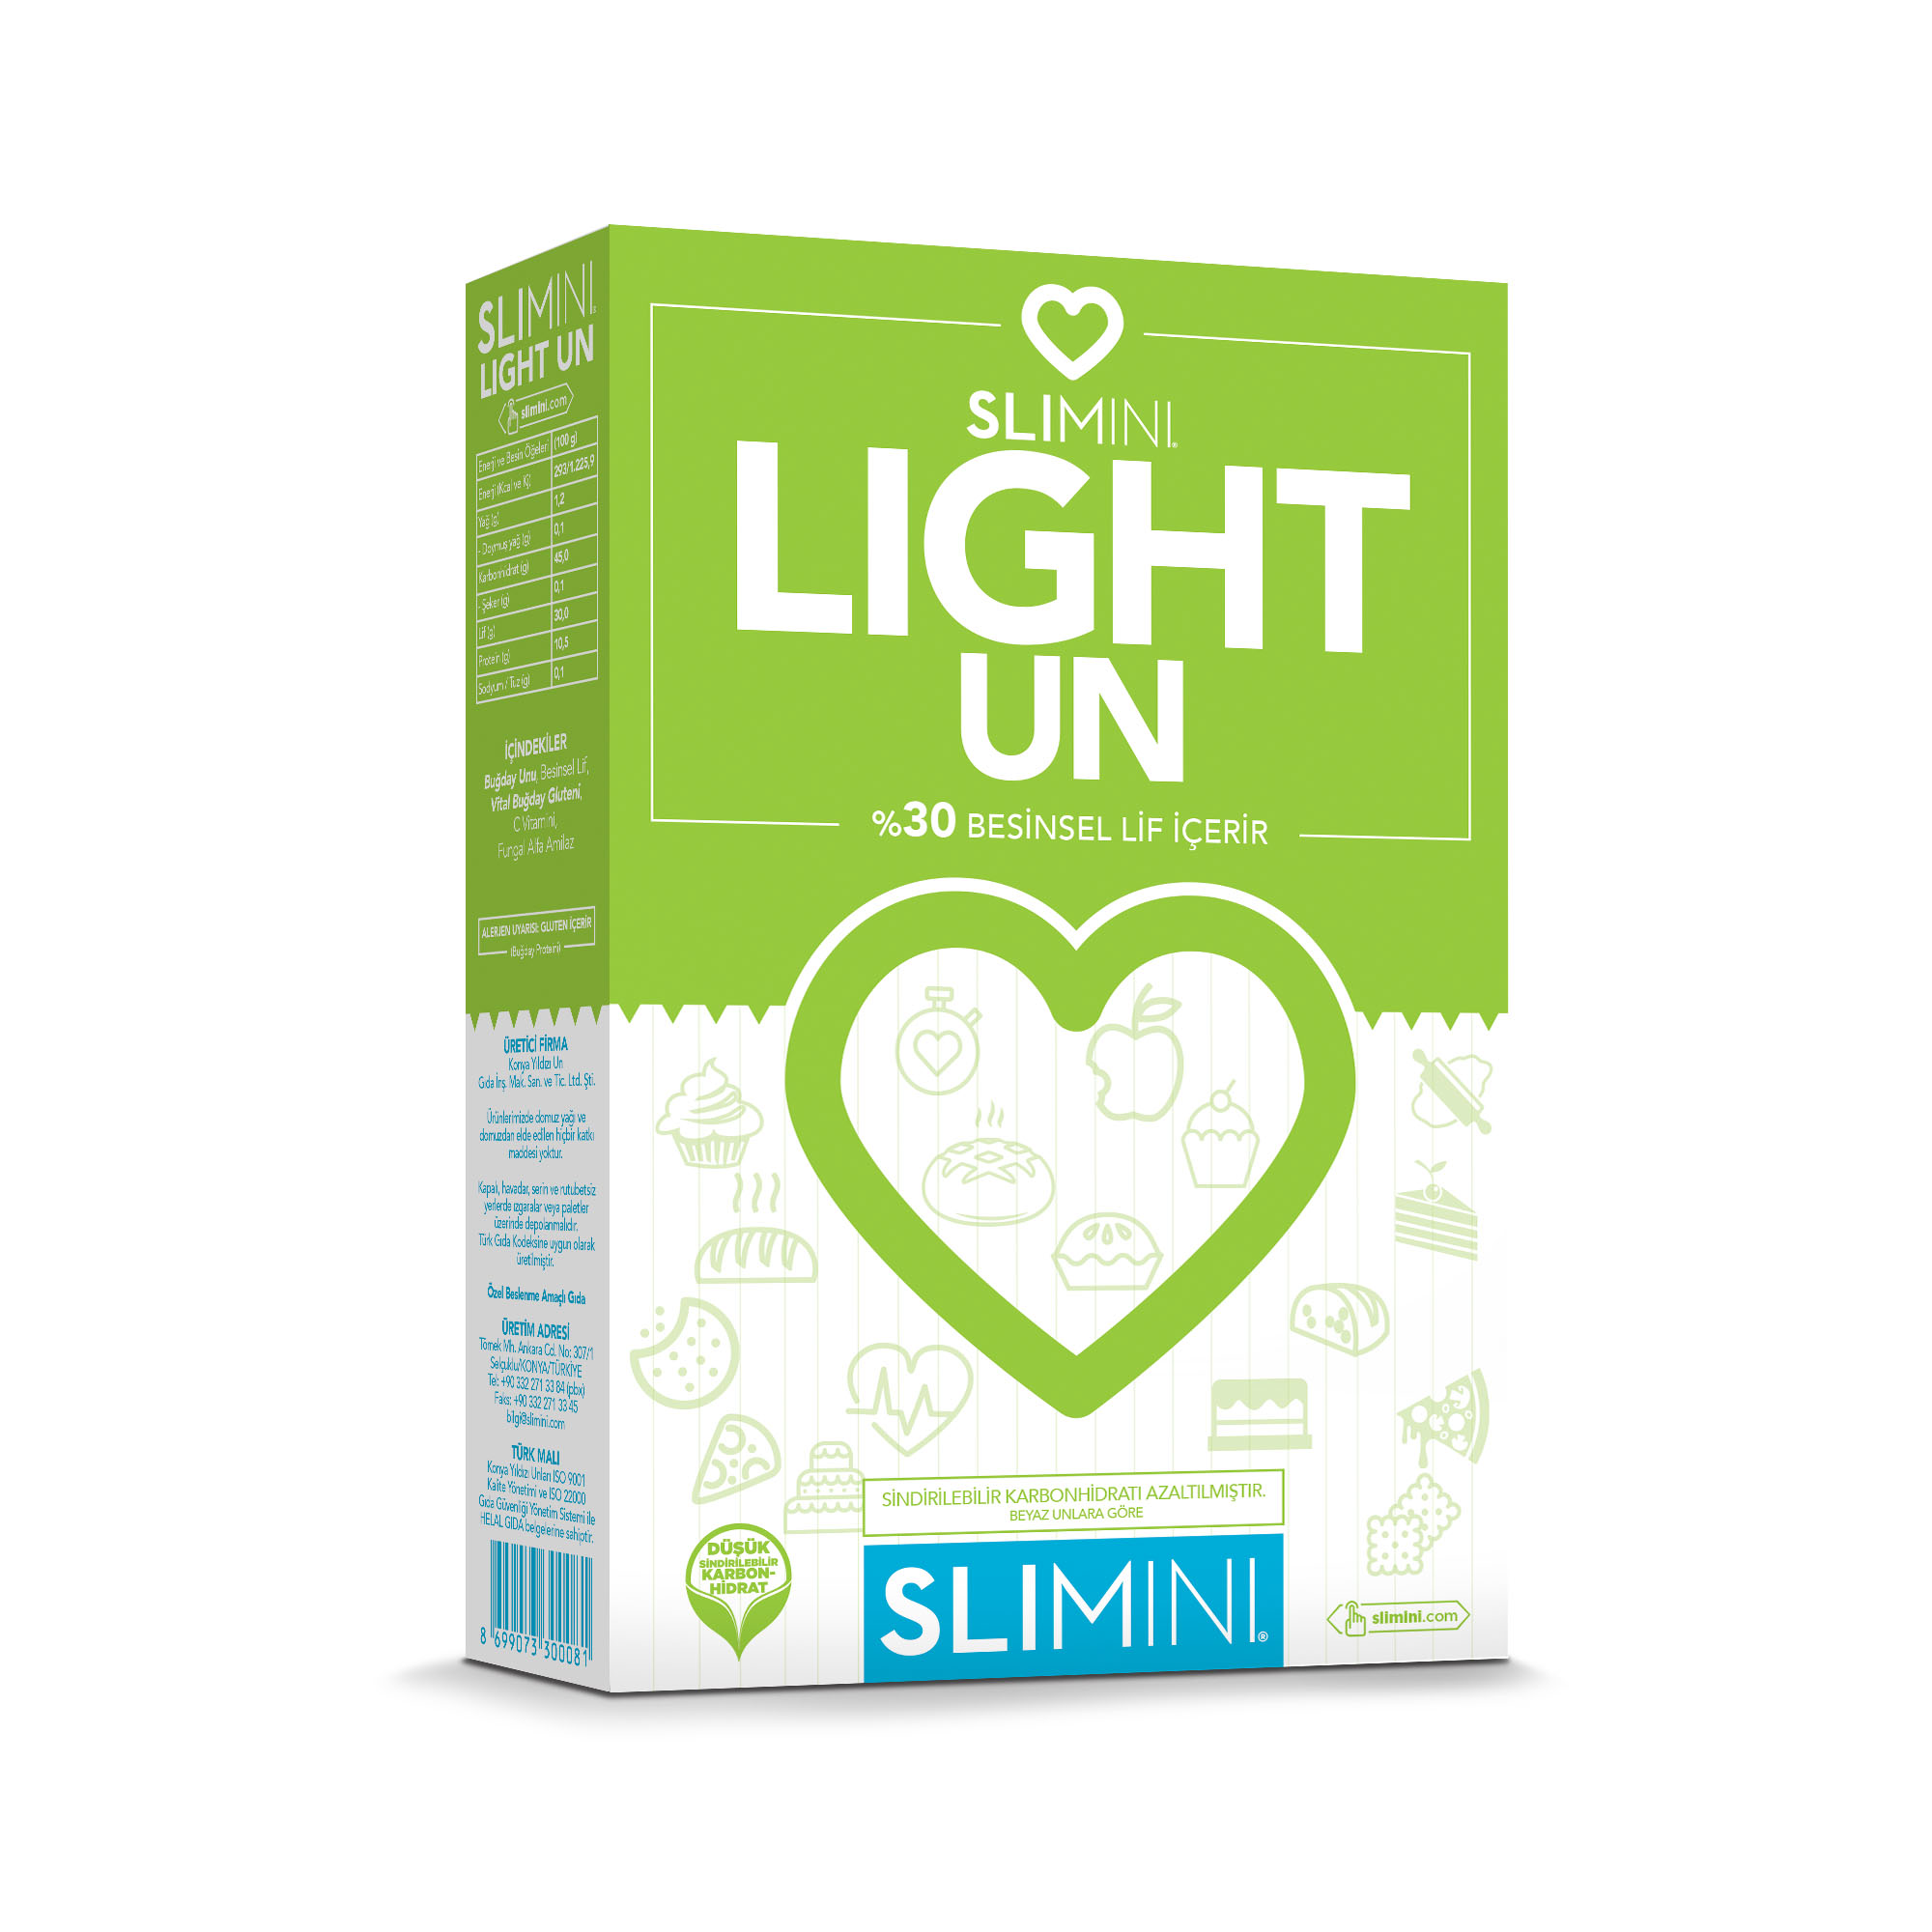 Slimini Light Un Karton Kutu 500 G